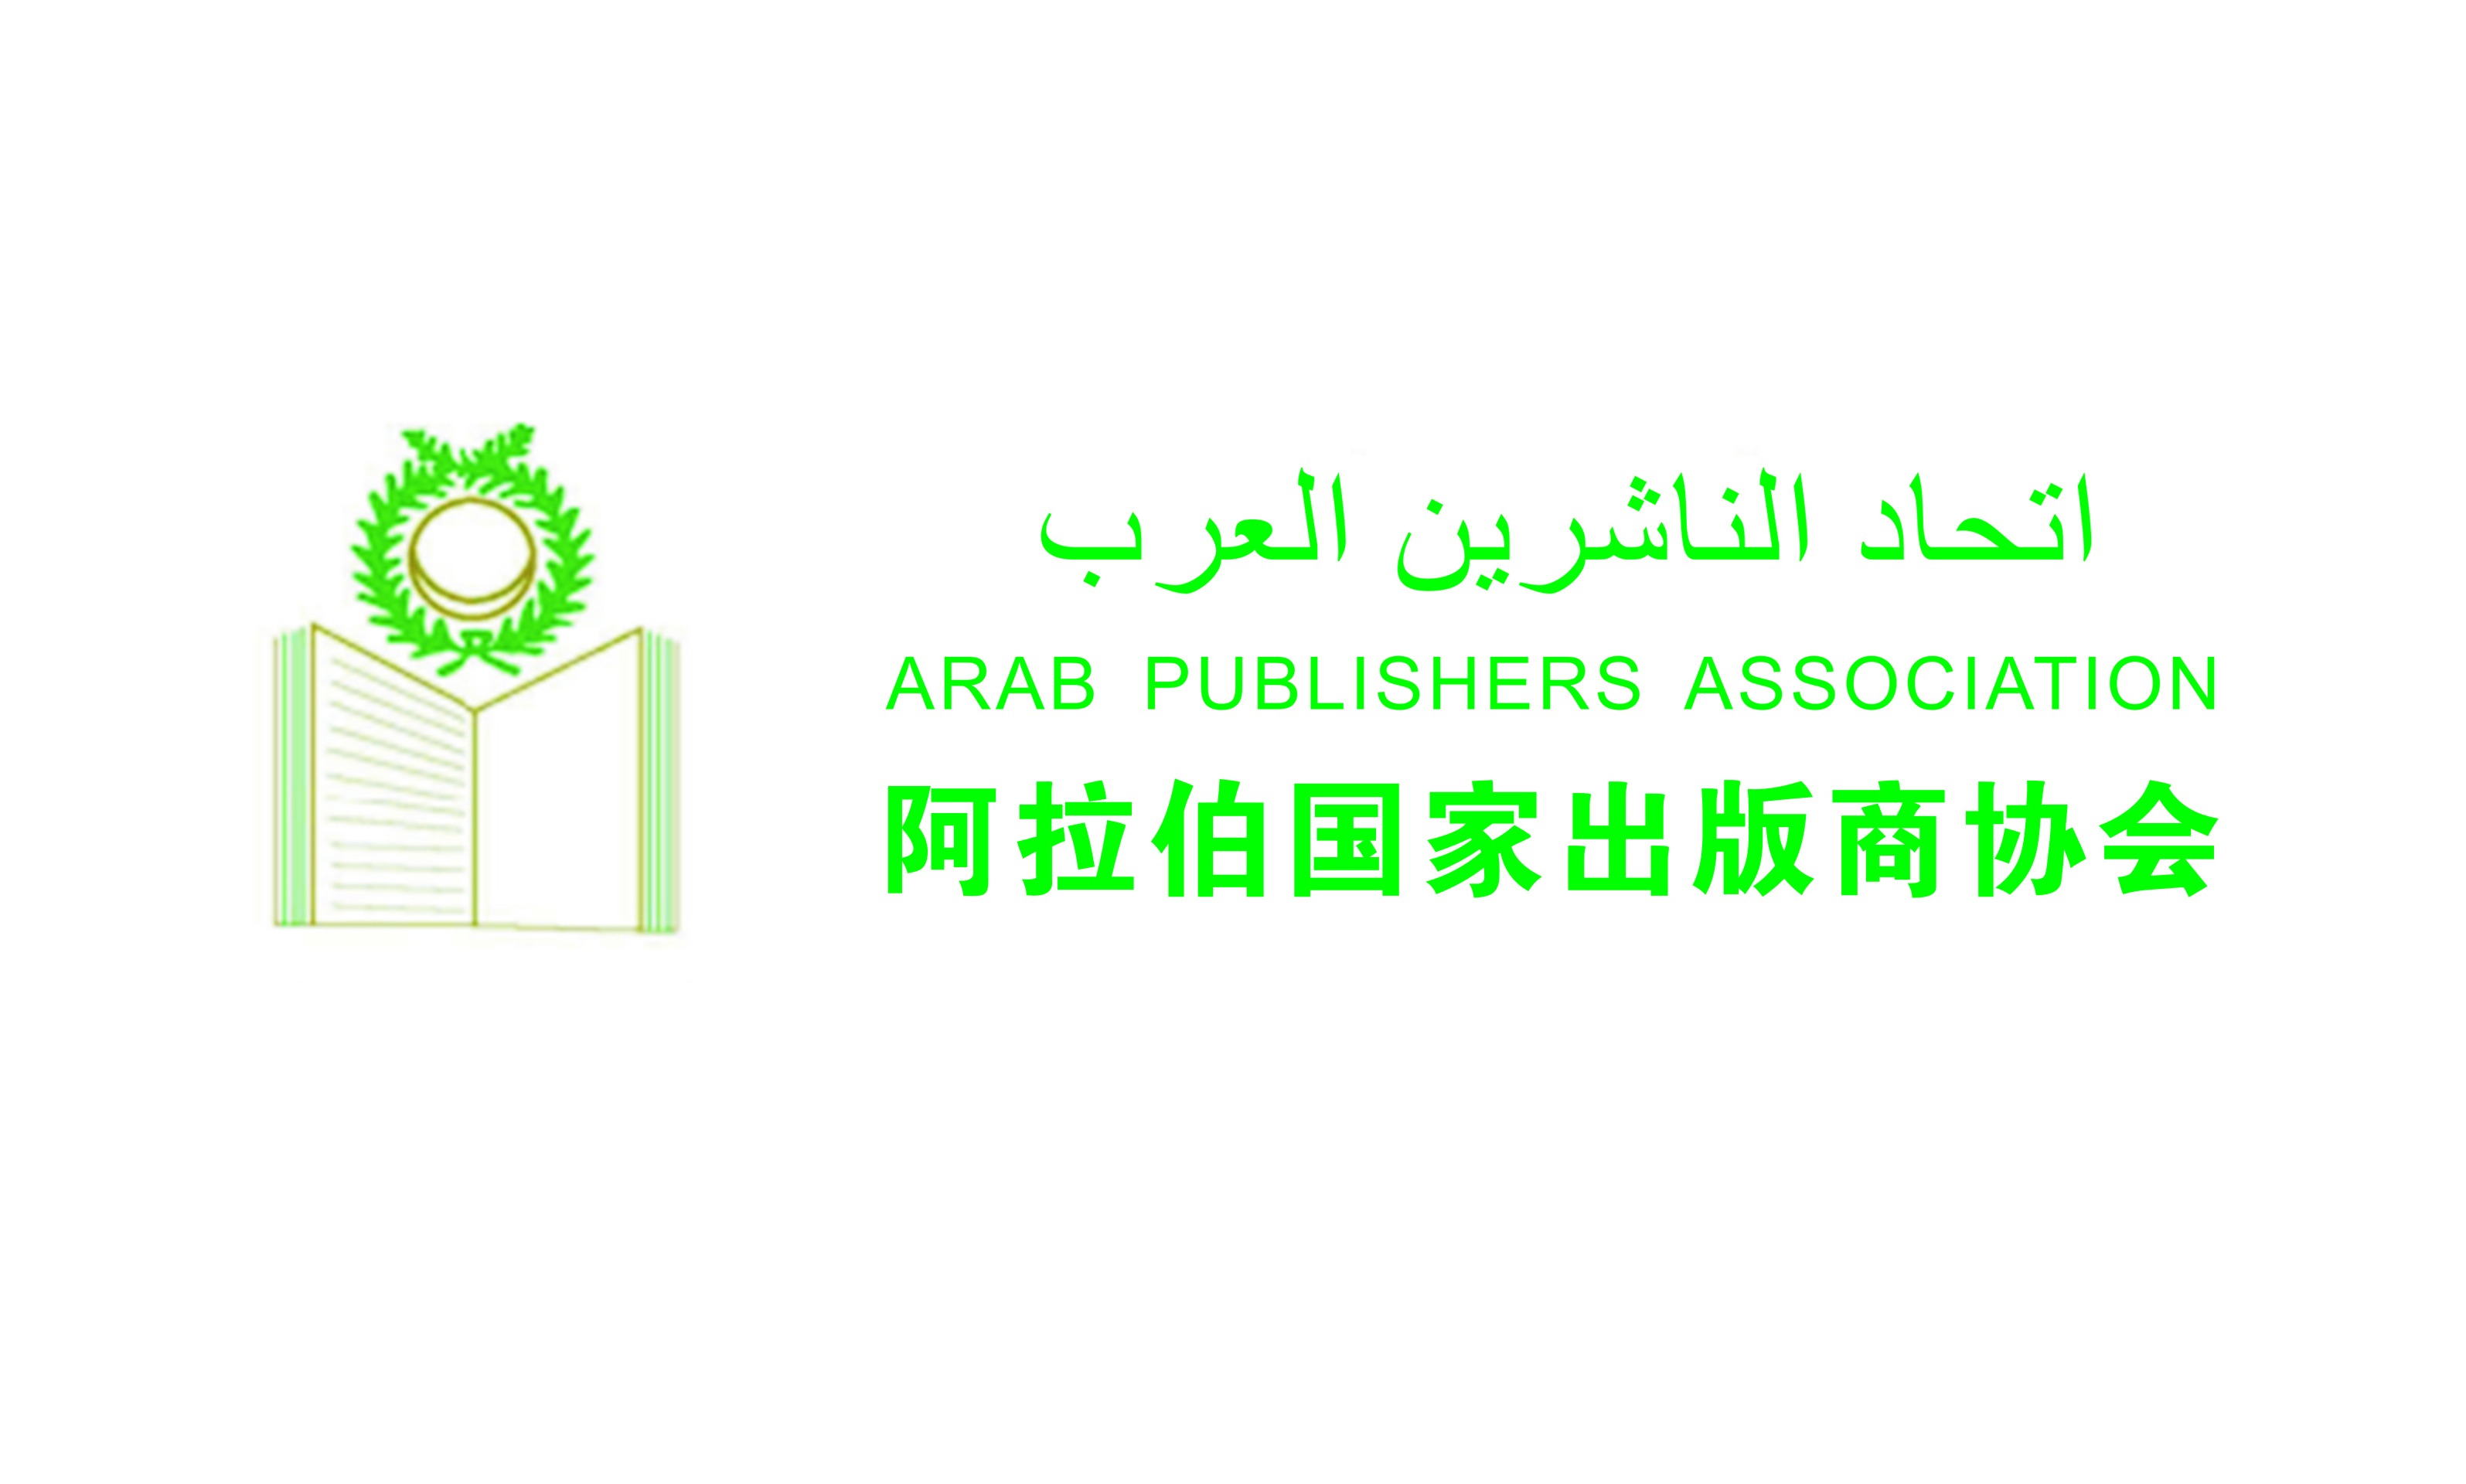 阿拉伯出版商协会.jpg